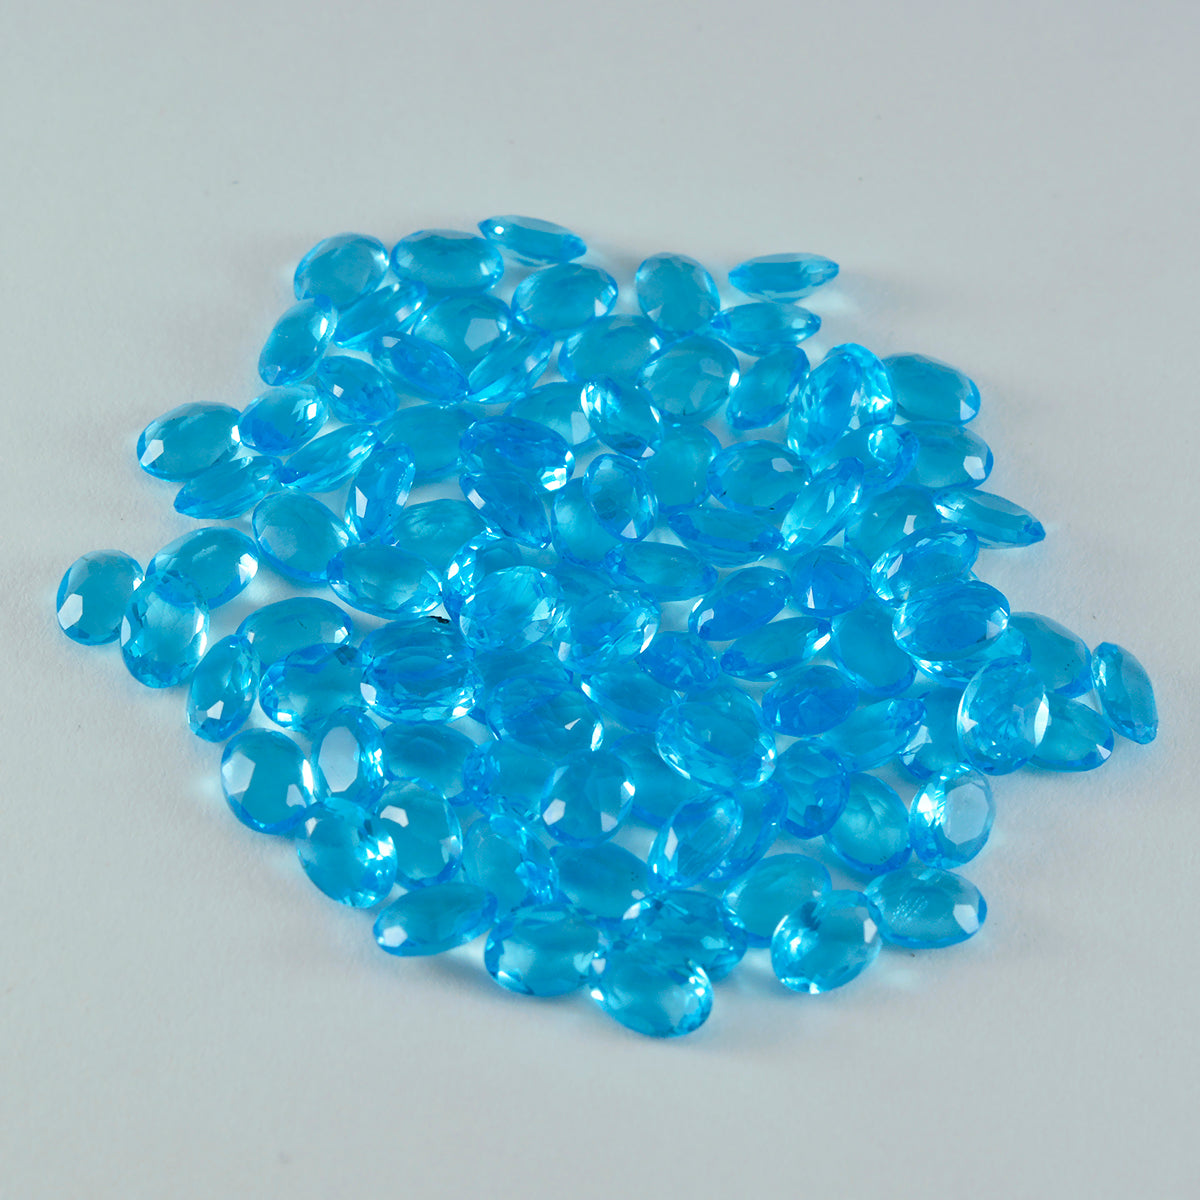 riyogems 1pc topaze bleue cz facettes 3x5 mm forme ovale a+1 qualité pierre précieuse en vrac